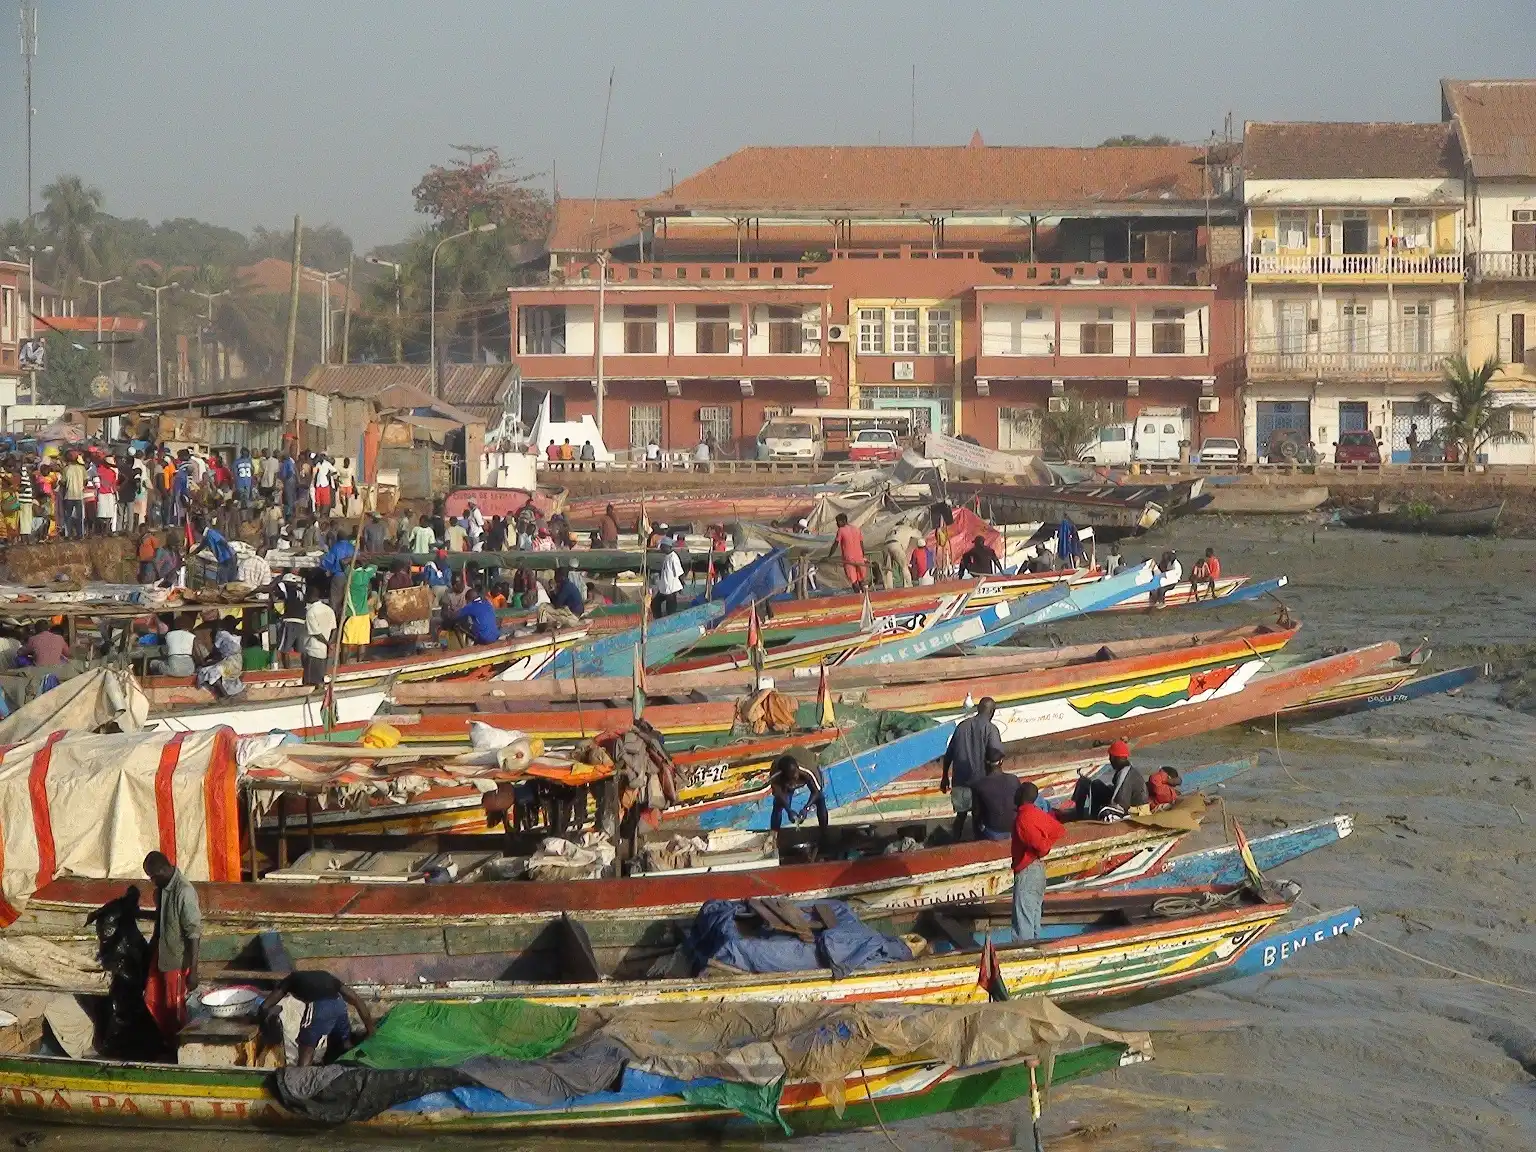 Guinea-Bissau tourism